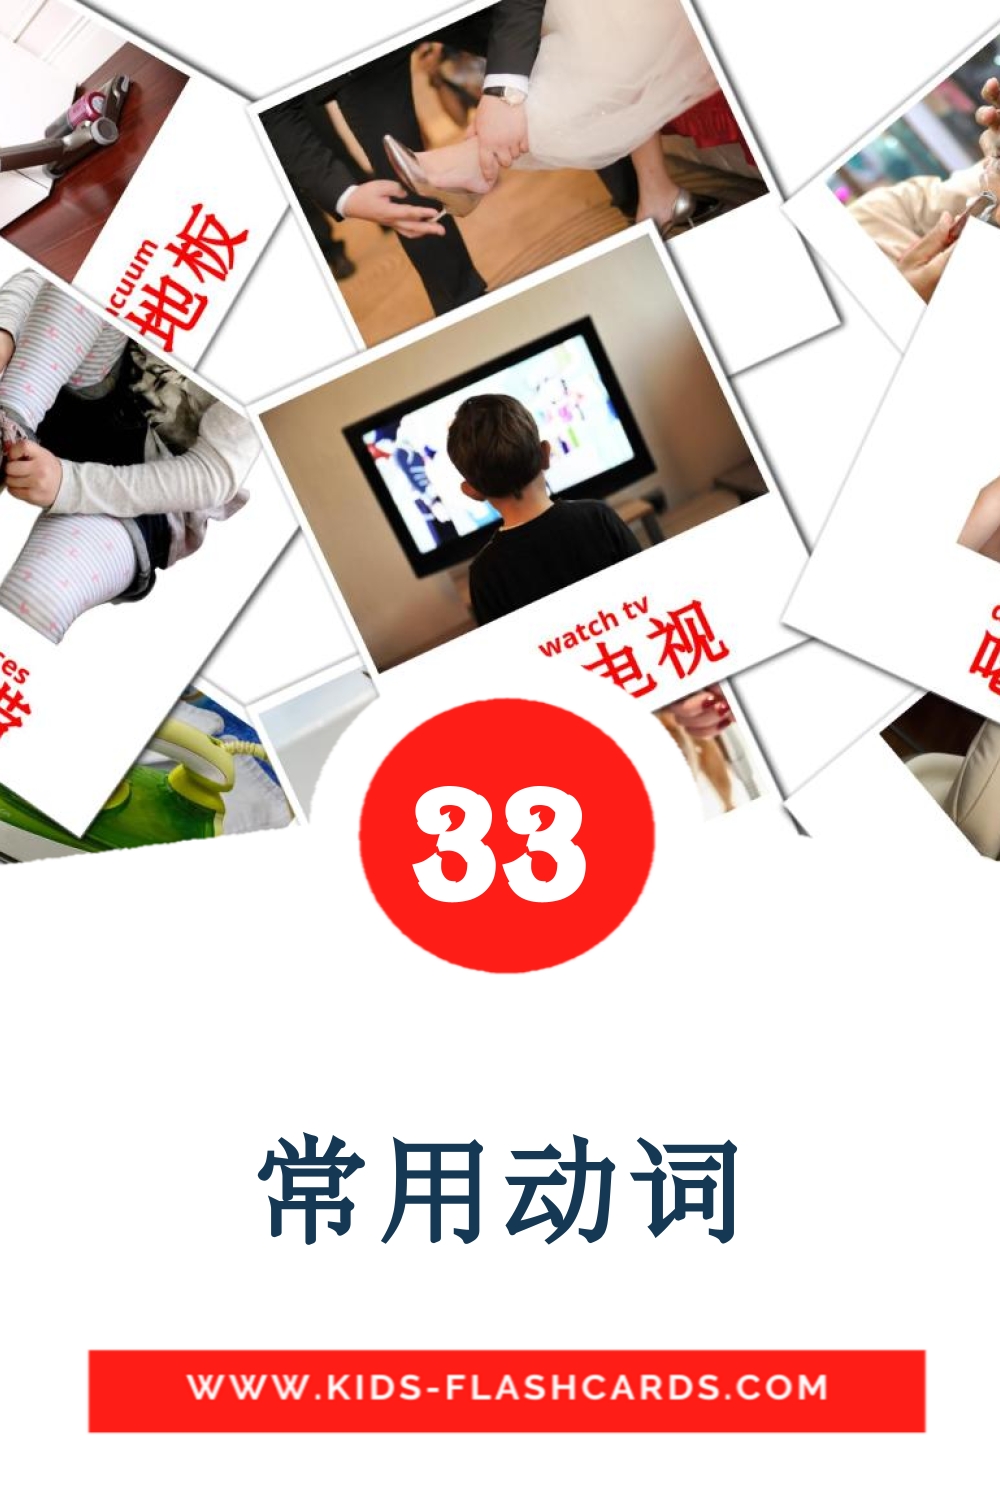 33 tarjetas didacticas de 常用动词 para el jardín de infancia en chino(simplificado)